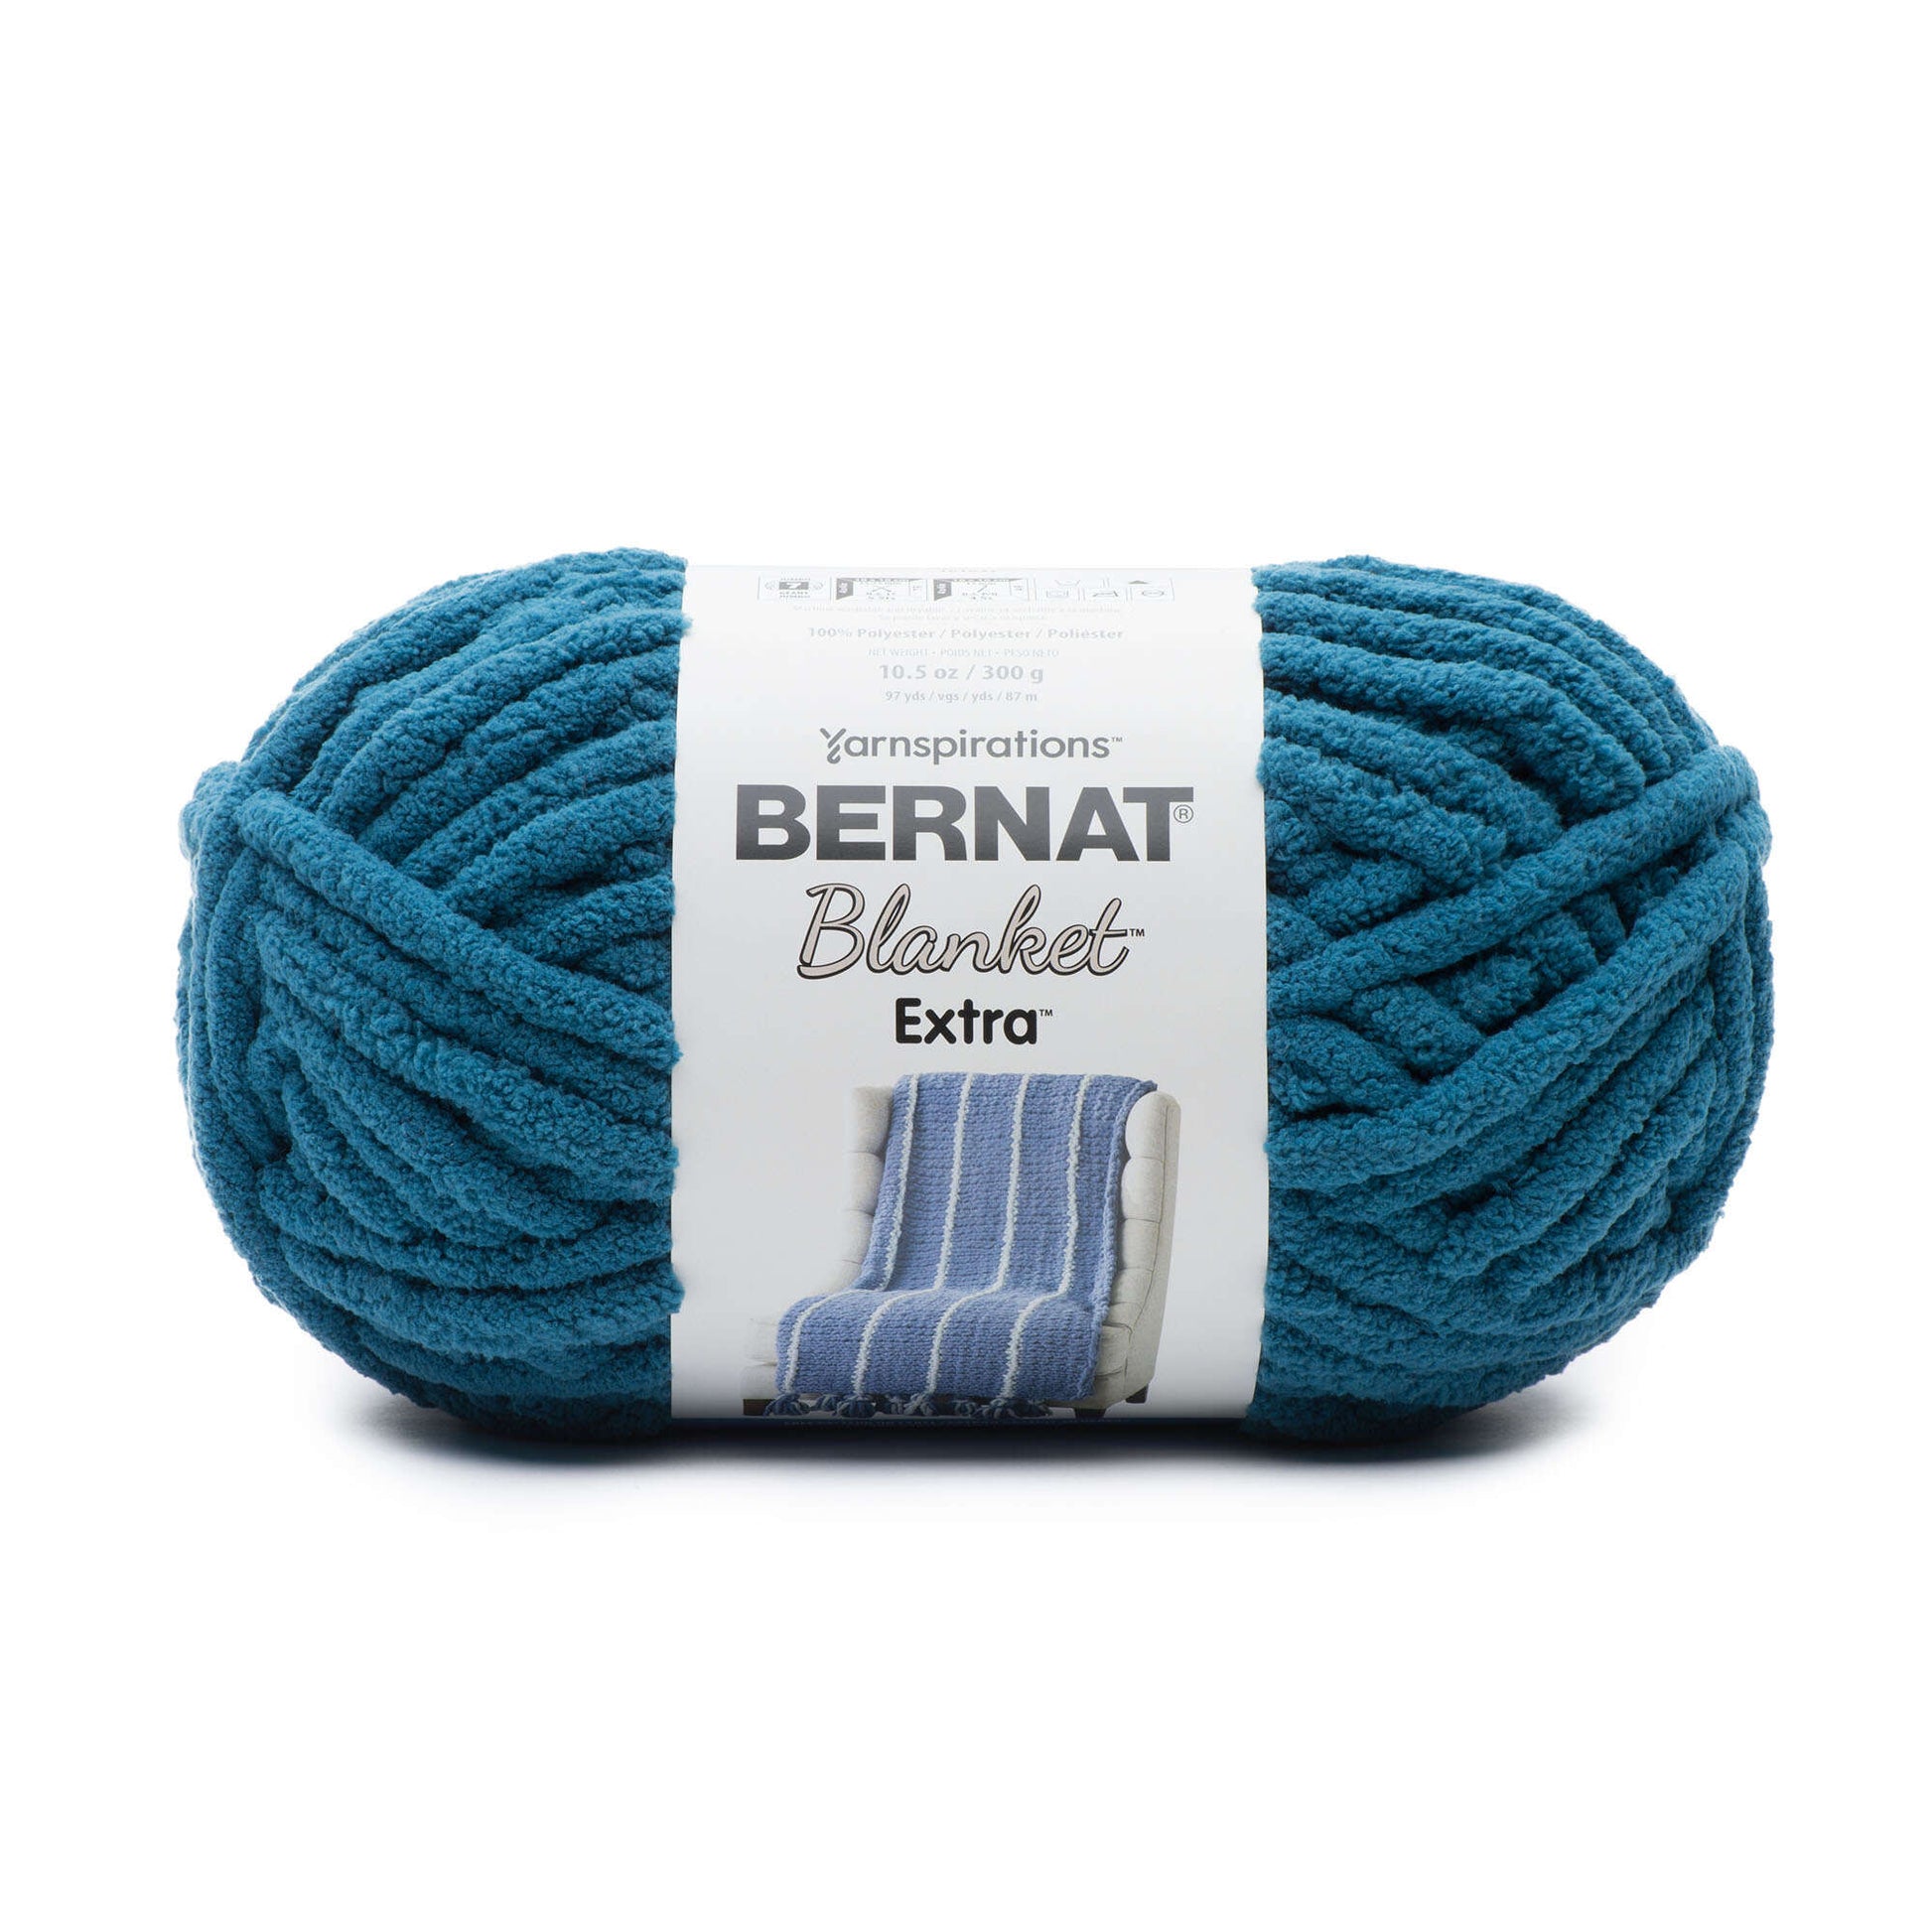 Bernat Blanket Extra Yarn (300g/10.5oz) Velveteal